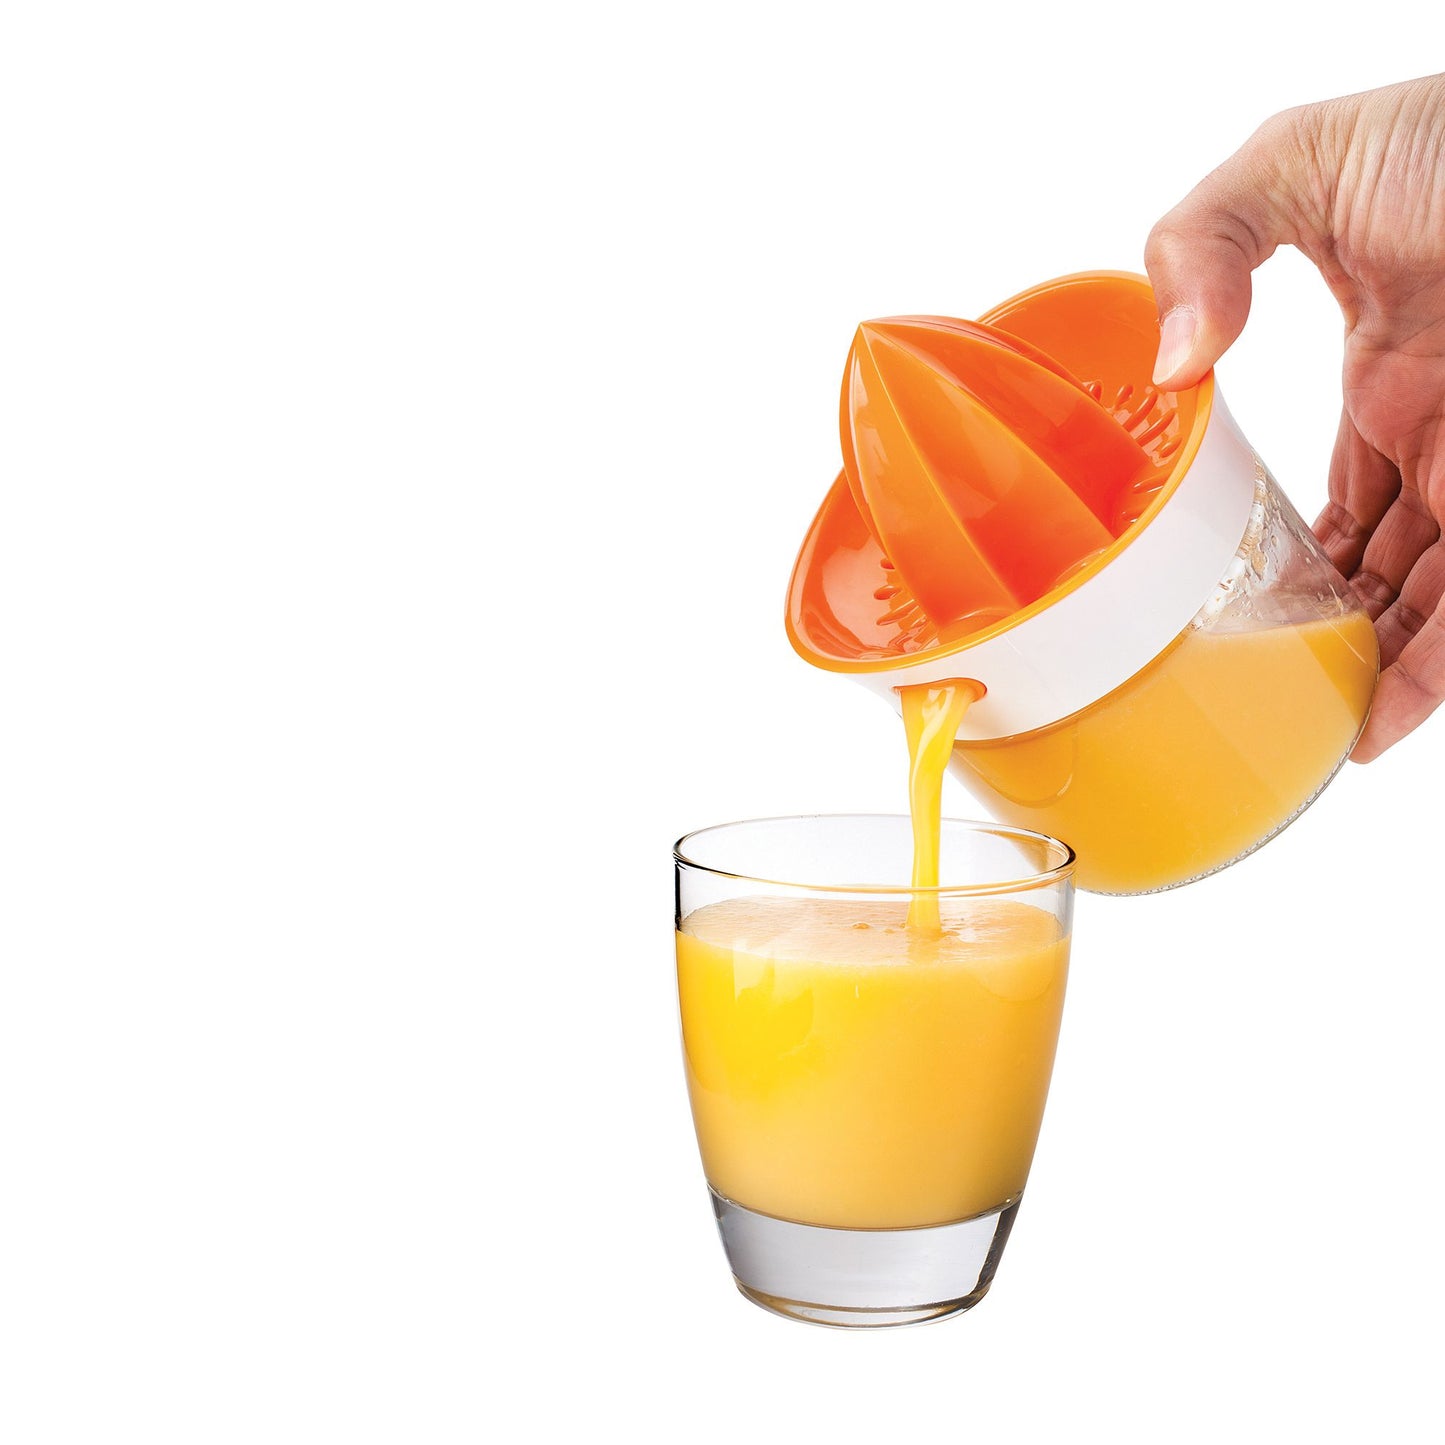 Squeeze & Pour Citrus Juicer